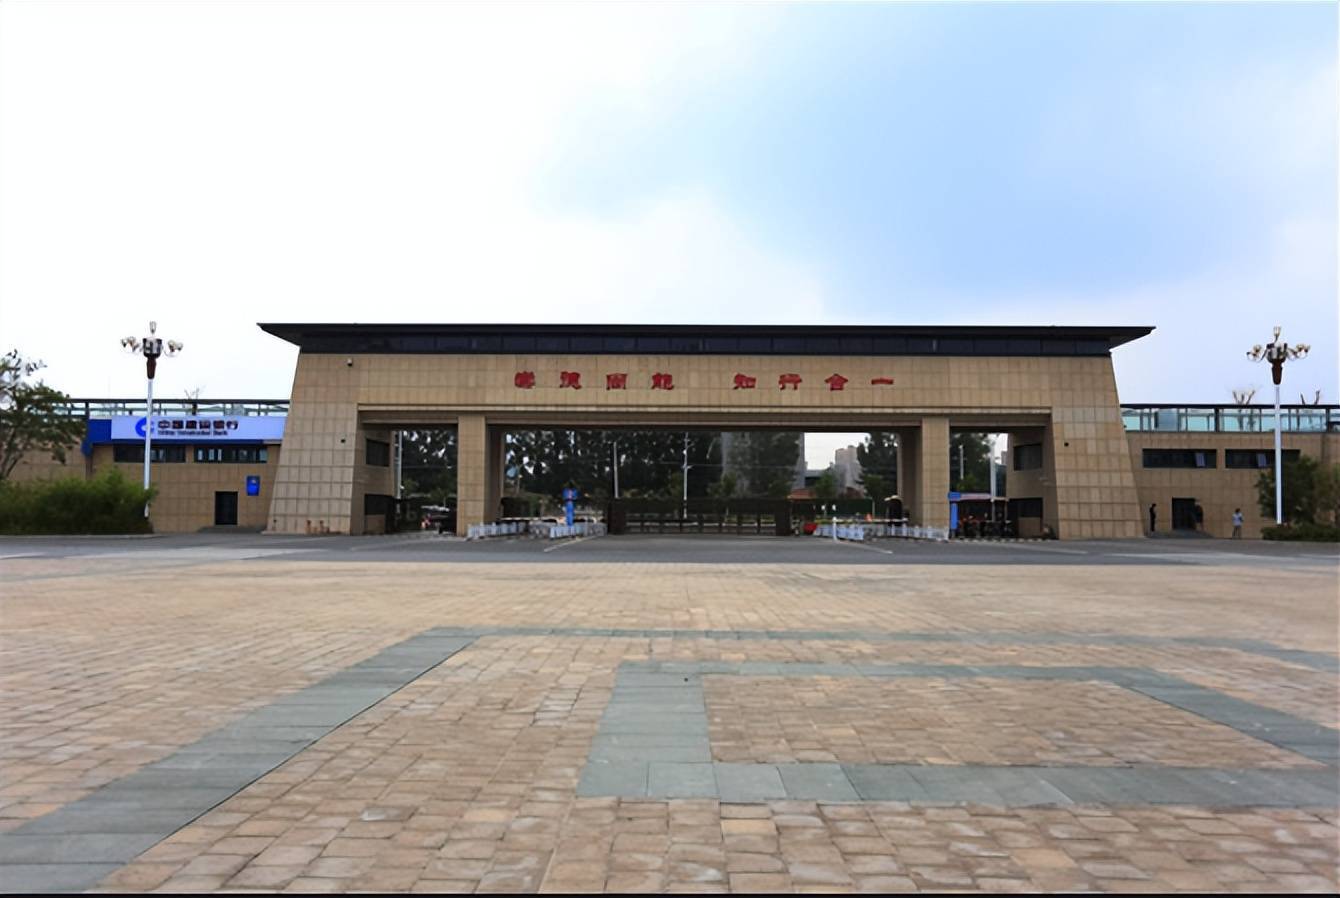 这所学校就是郑州铁路职业技术学院